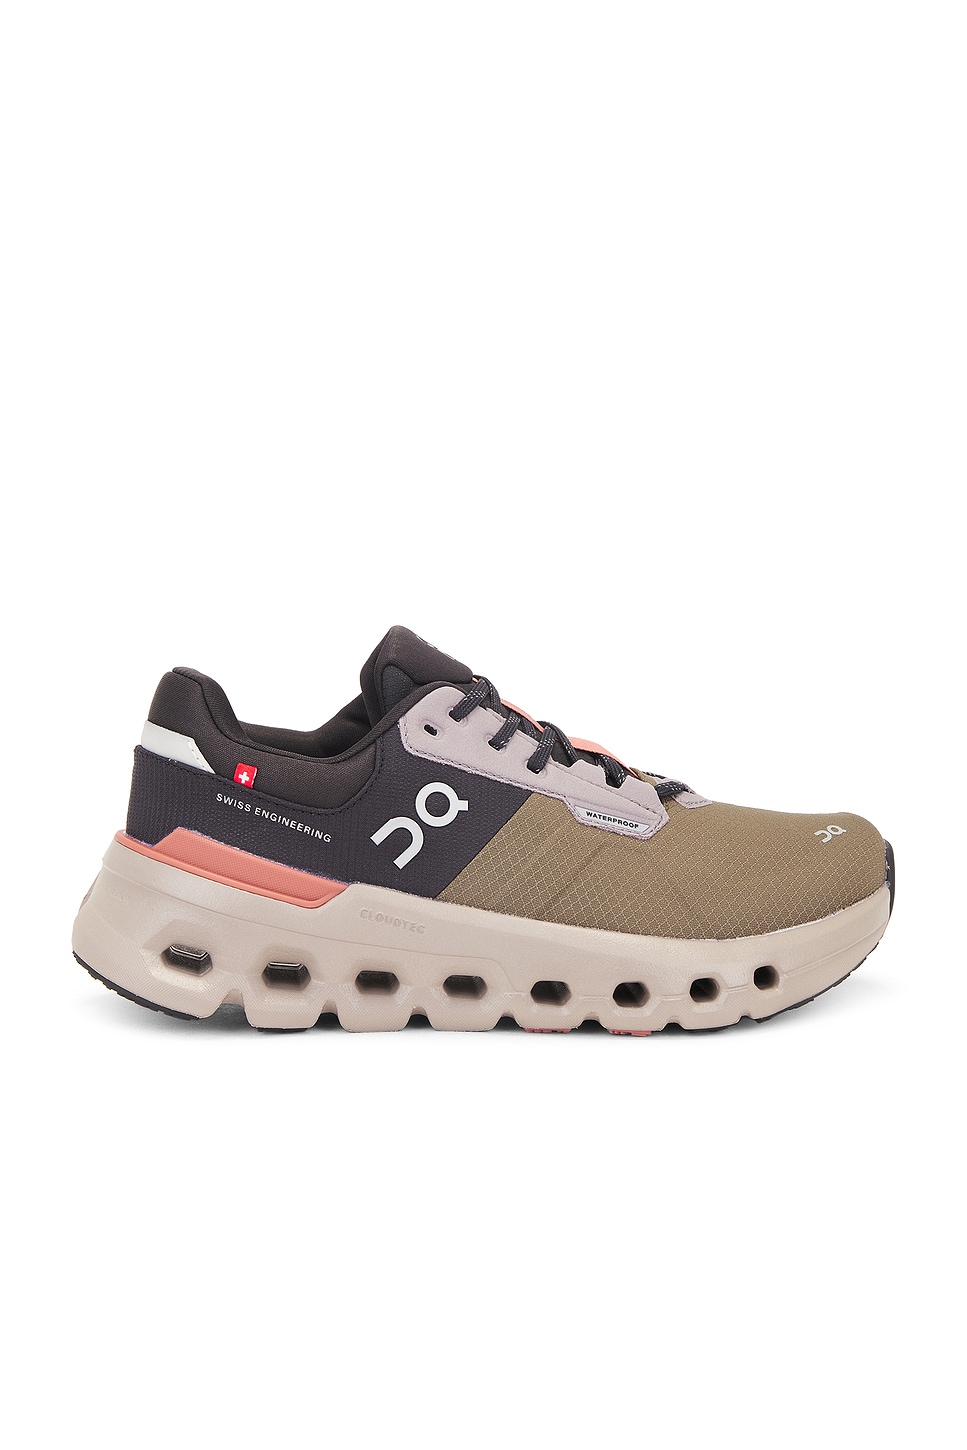 Cloudrunner 2 Waterproof Sneaker in Olive